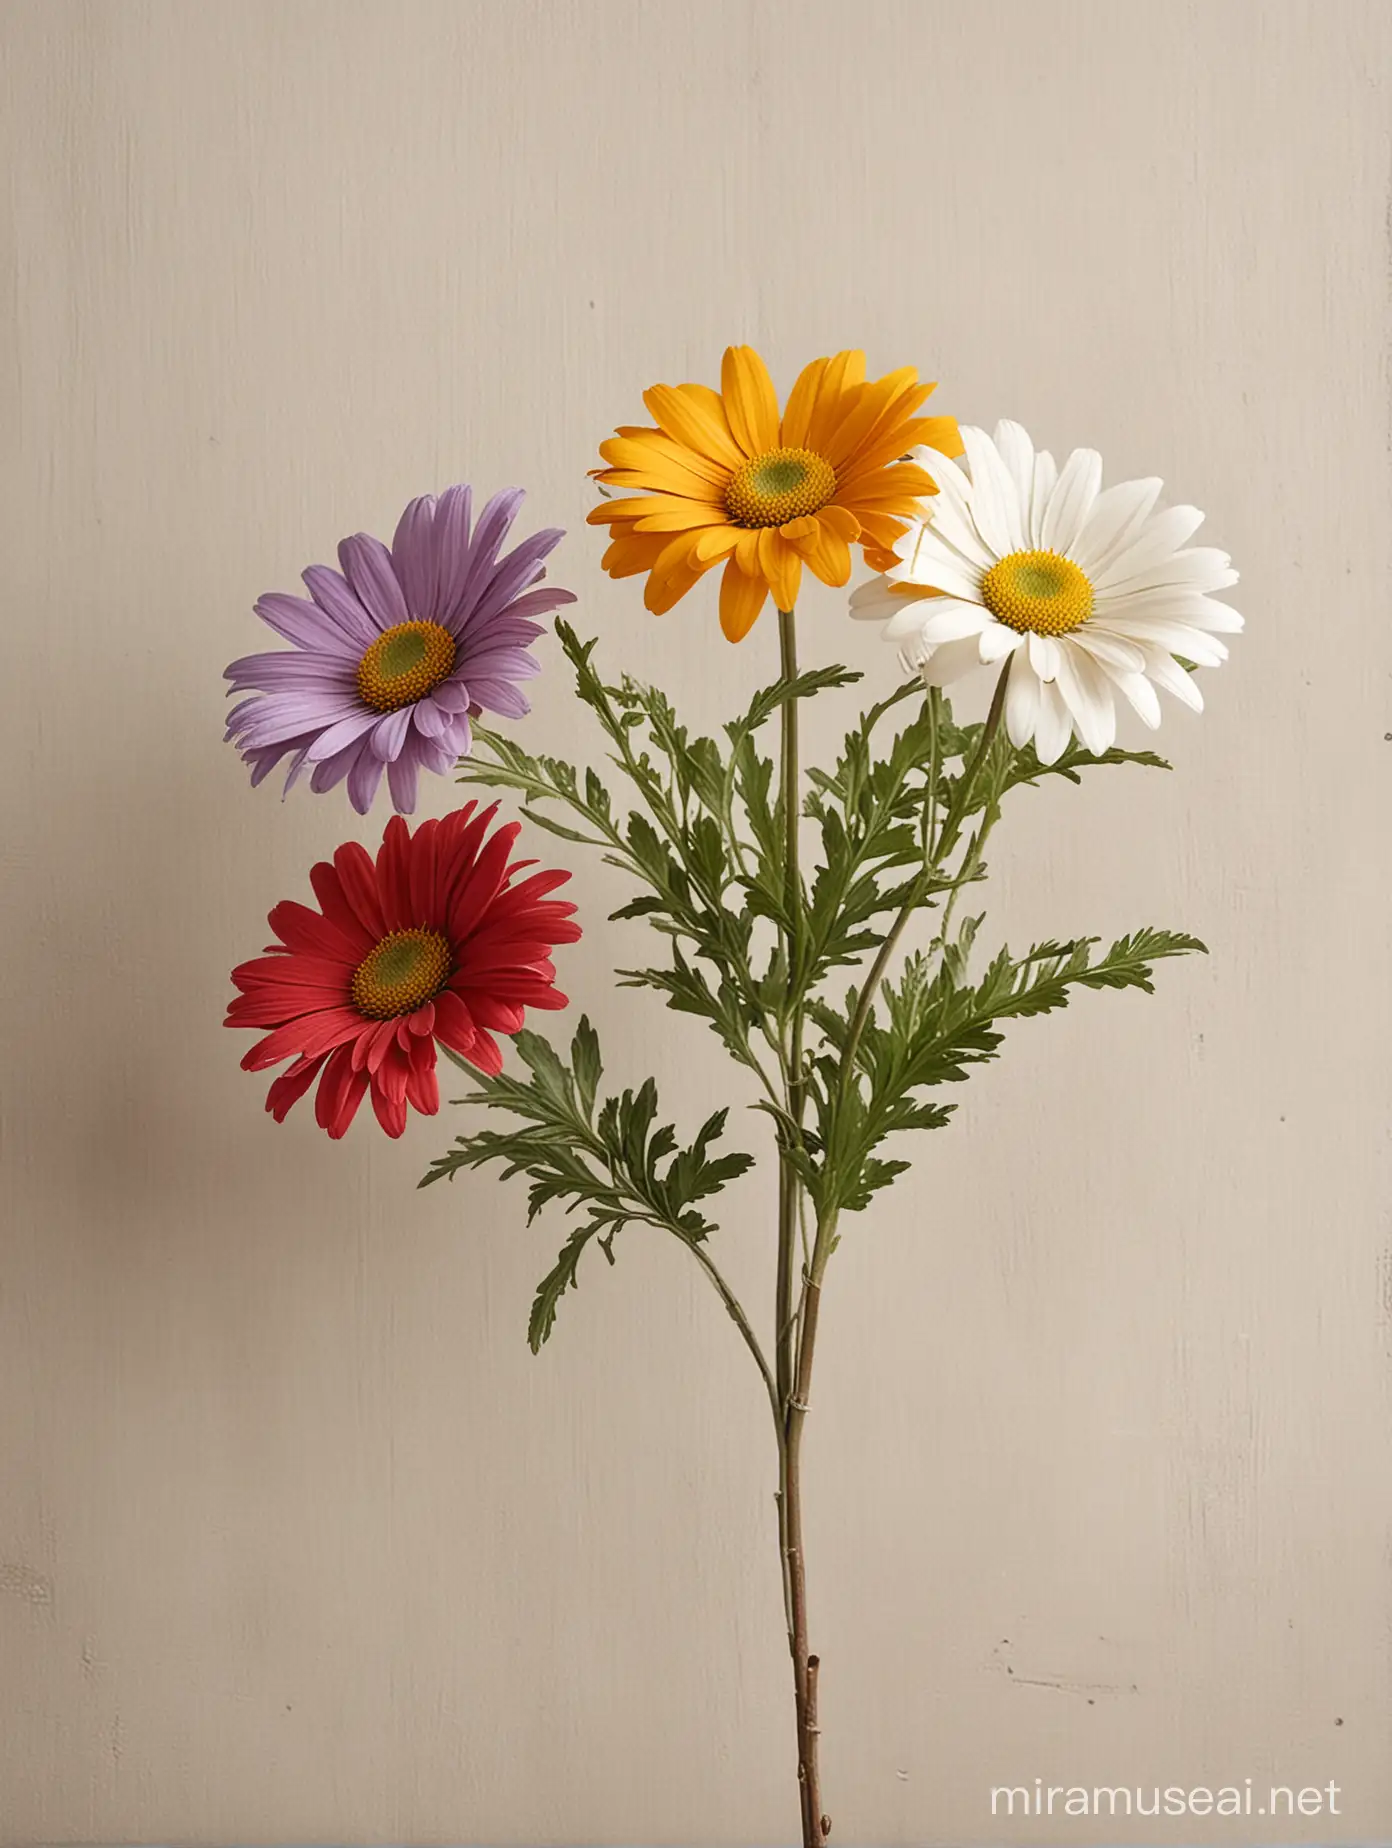 Vibrant MultiColored Wild Daisy Blossoming in Stylish Decorative Setting